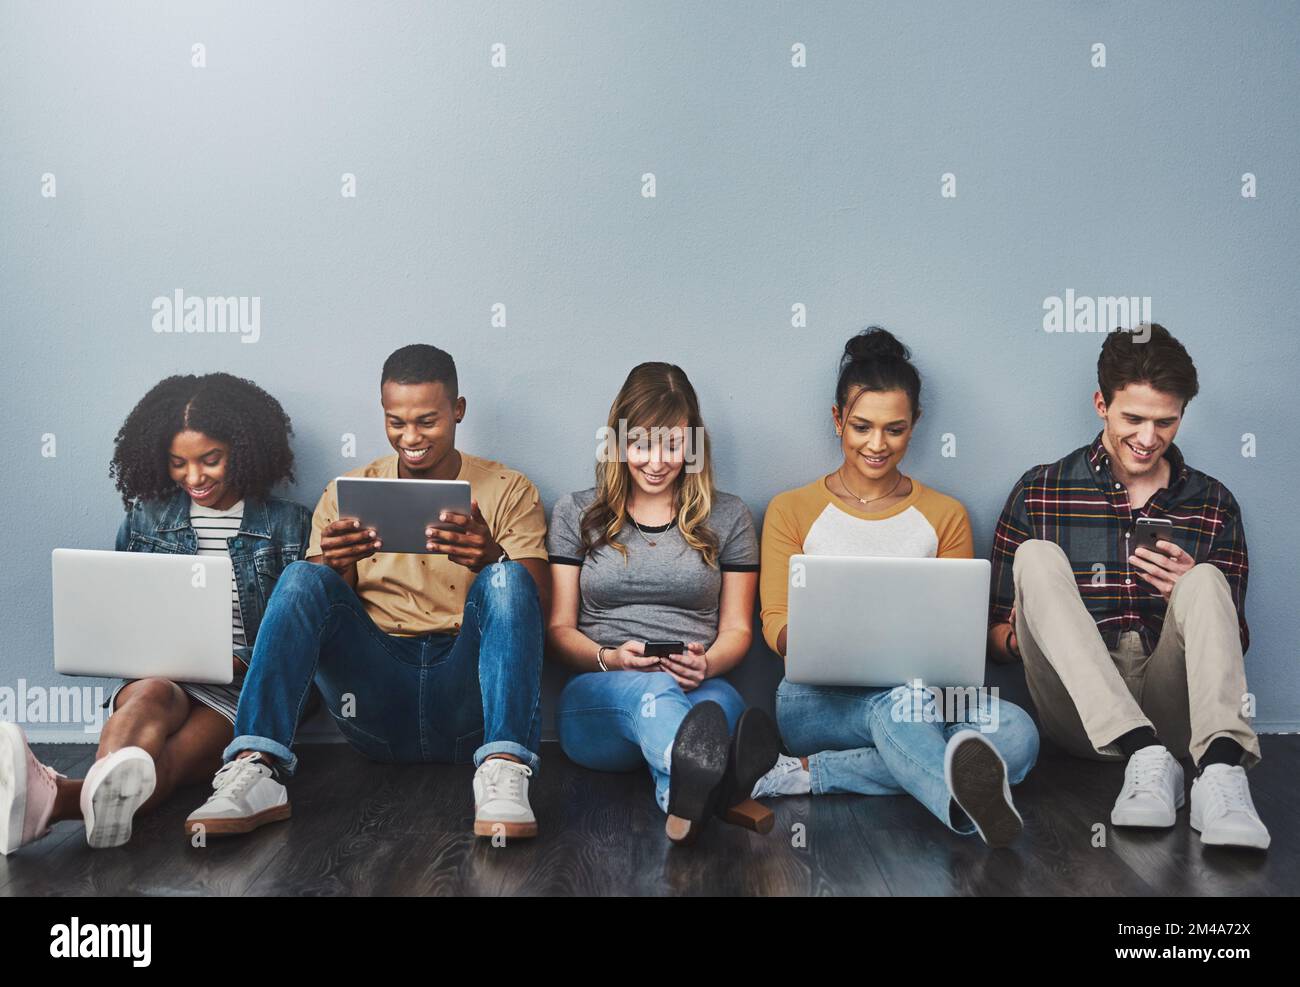 Die technologiebewusste Generation. Studiofoto einer Gruppe junger Menschen, die drahtlose Technologie vor grauem Hintergrund verwenden. Stockfoto